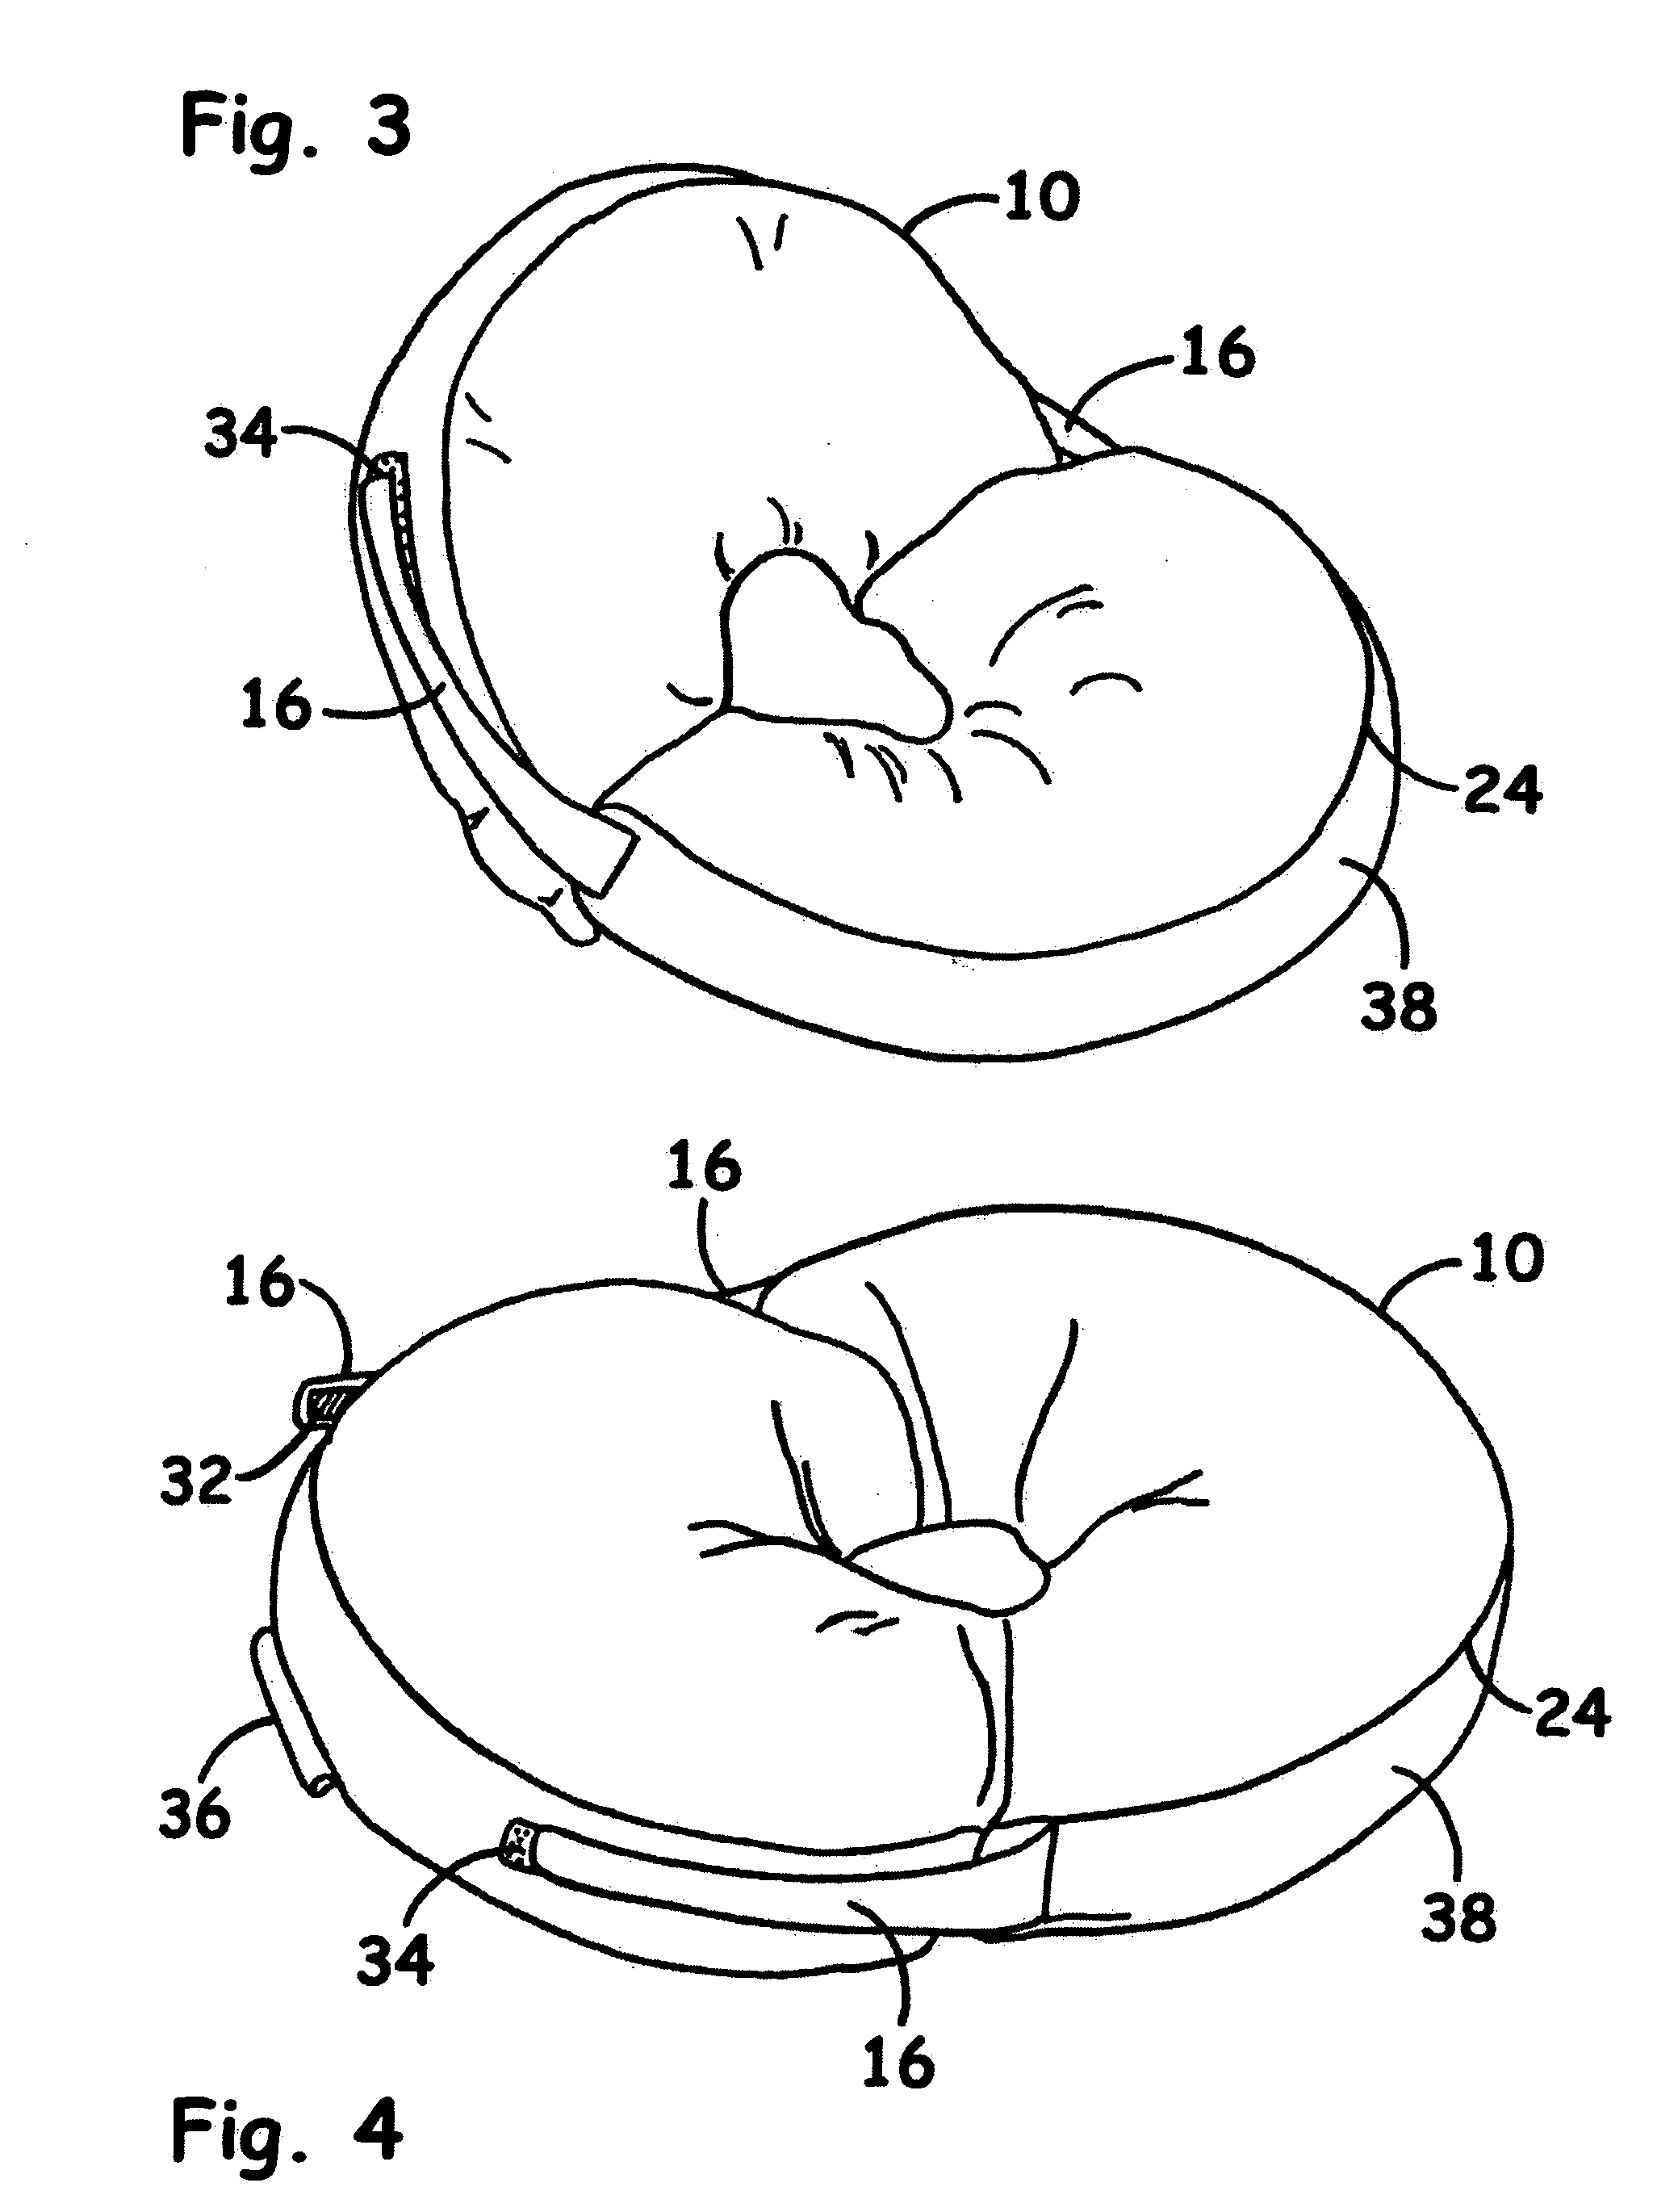 Adjustable contoured baby bathing or pet cushion